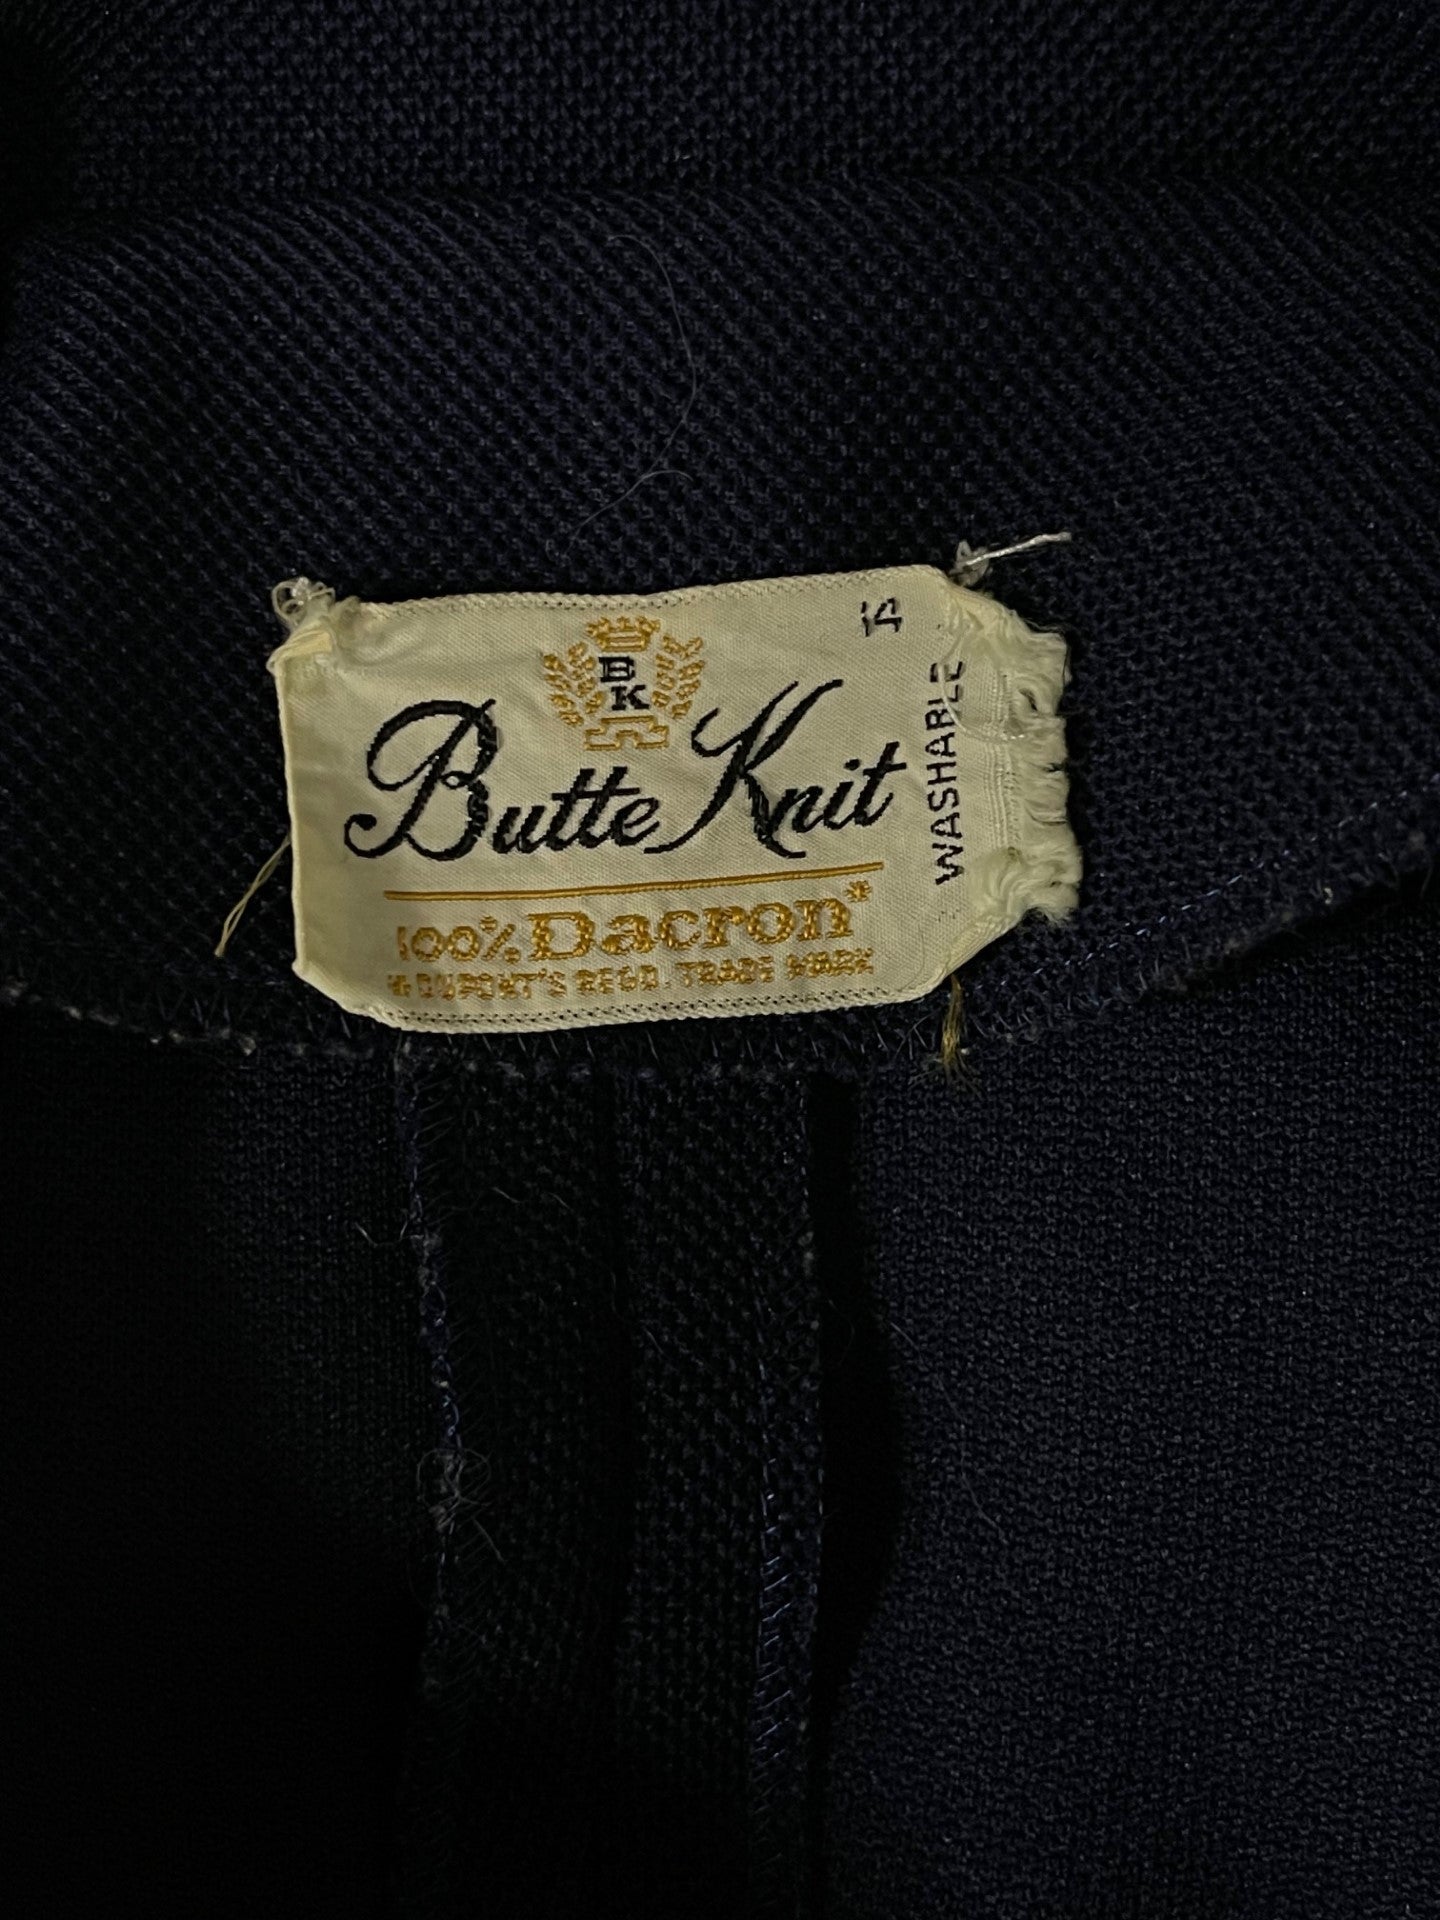 Butte Knit Vintage Blue Blazer Size 14